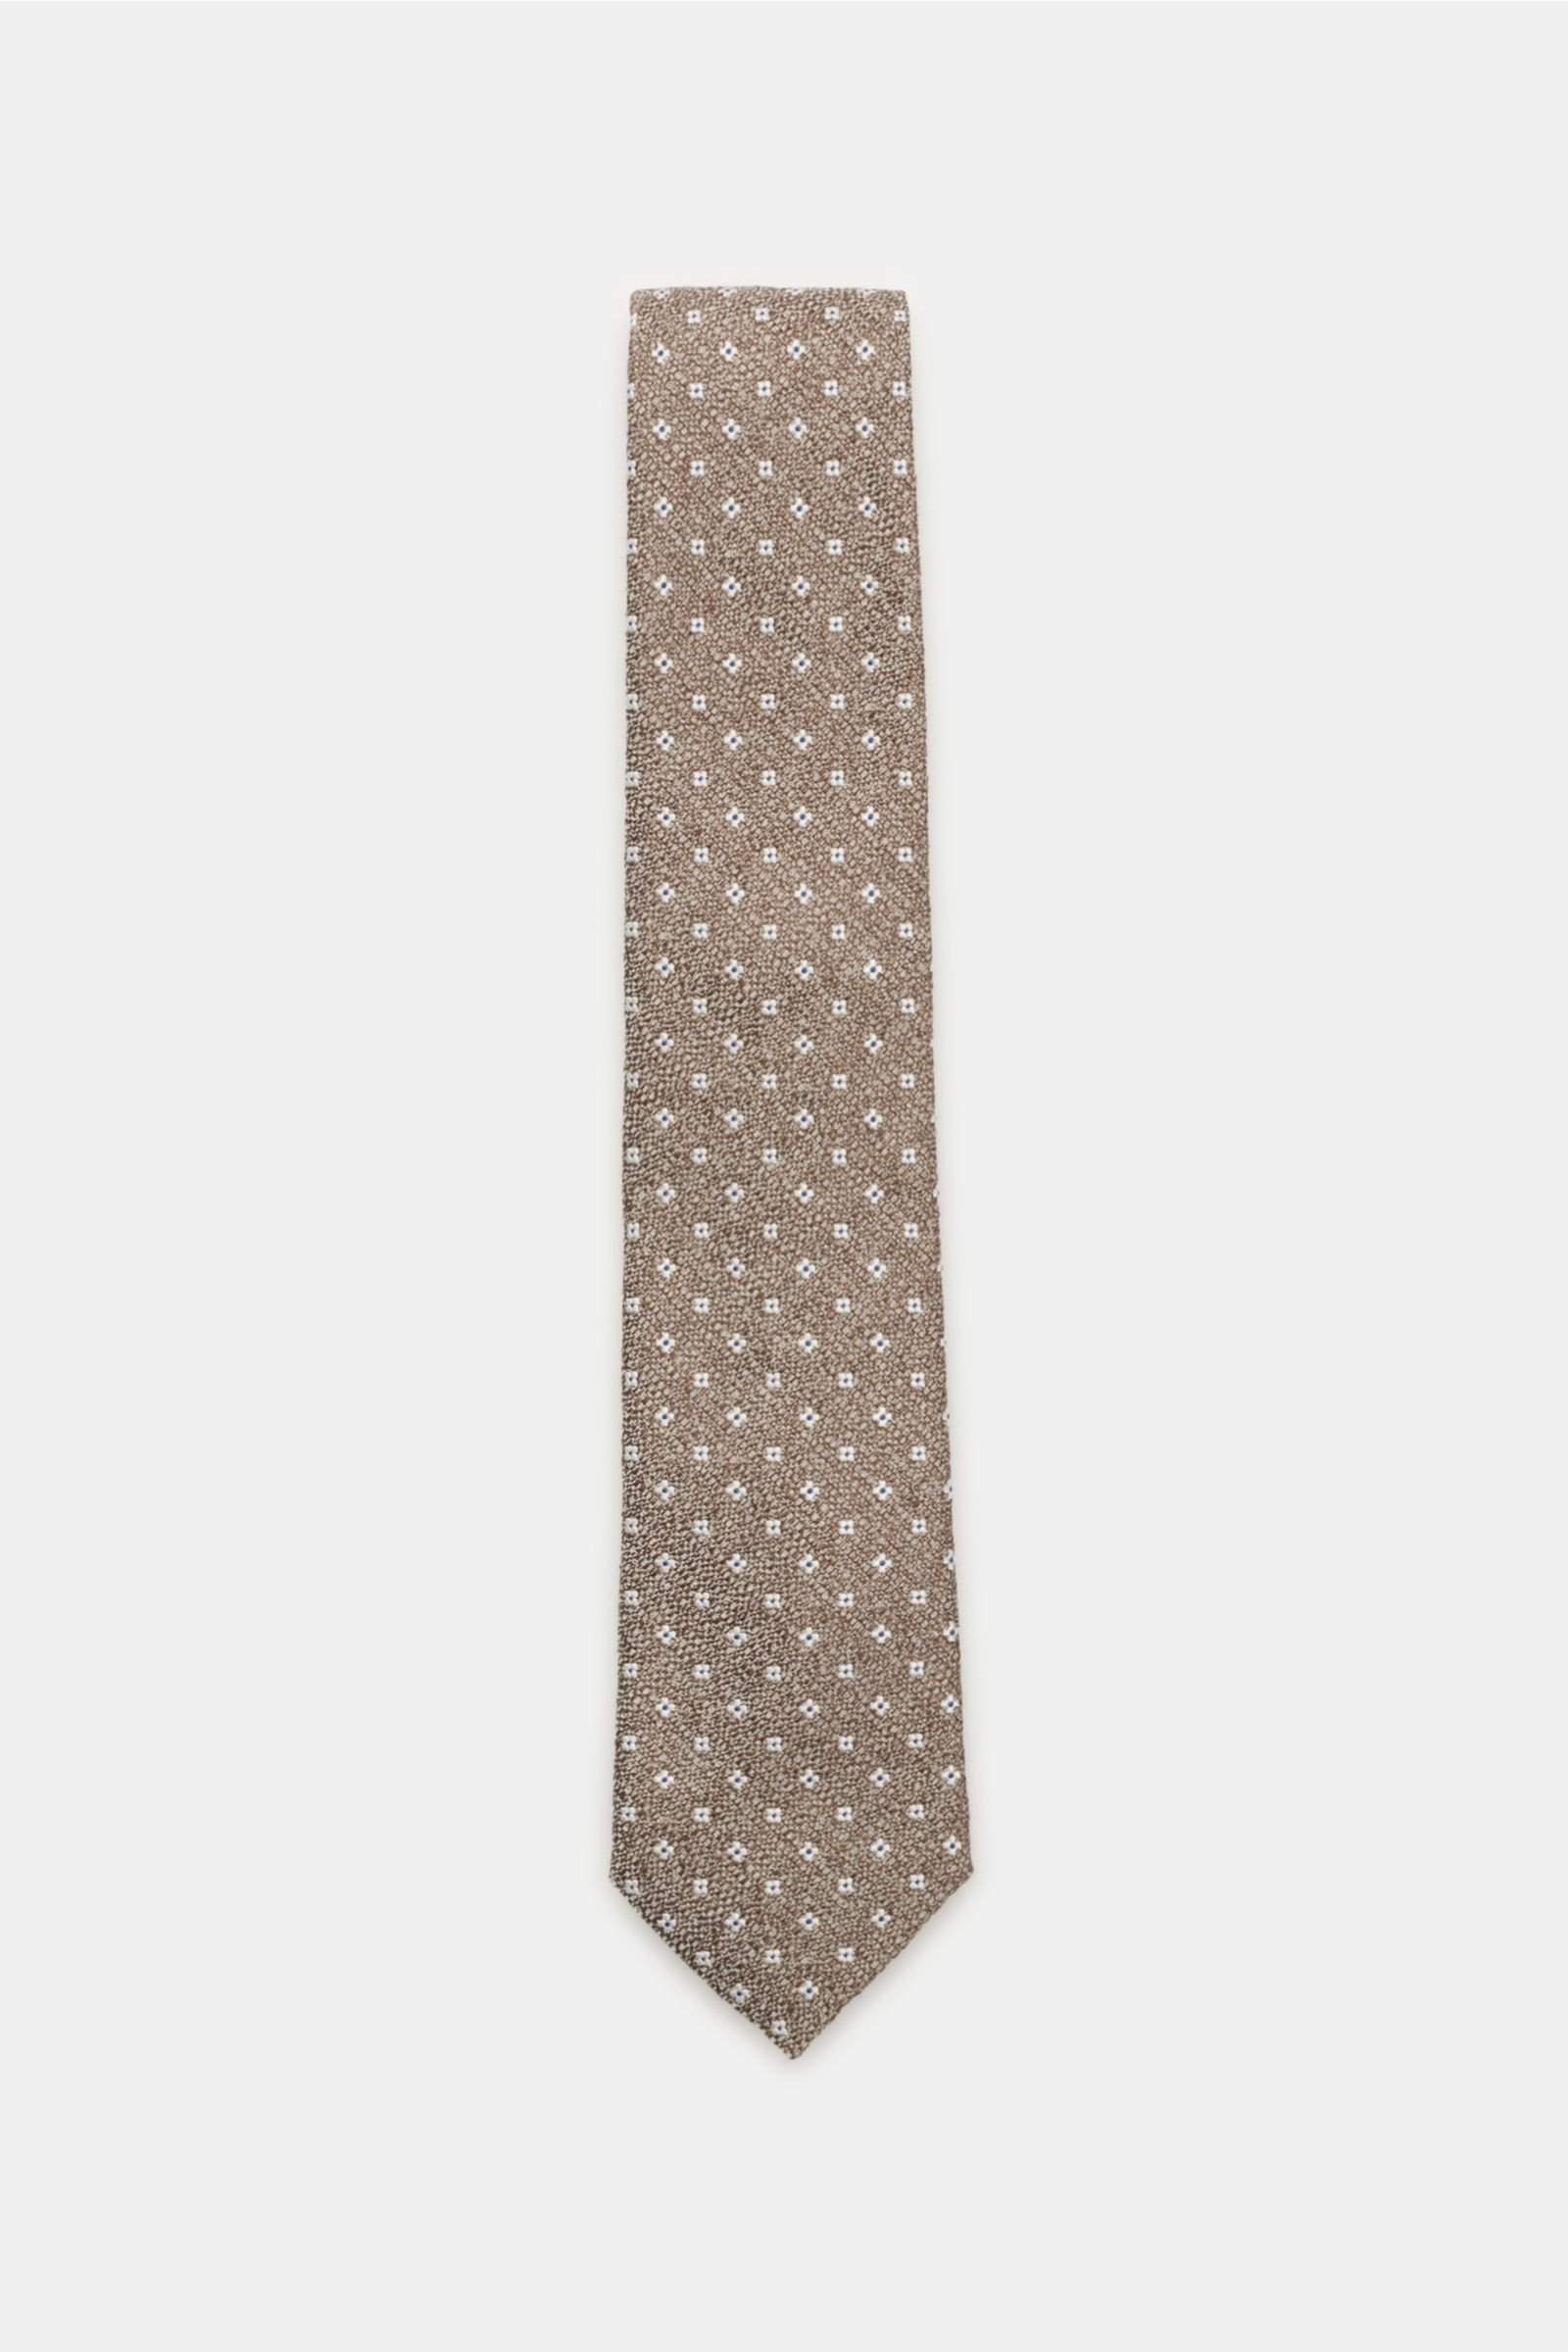 Tie grey-brown patterned